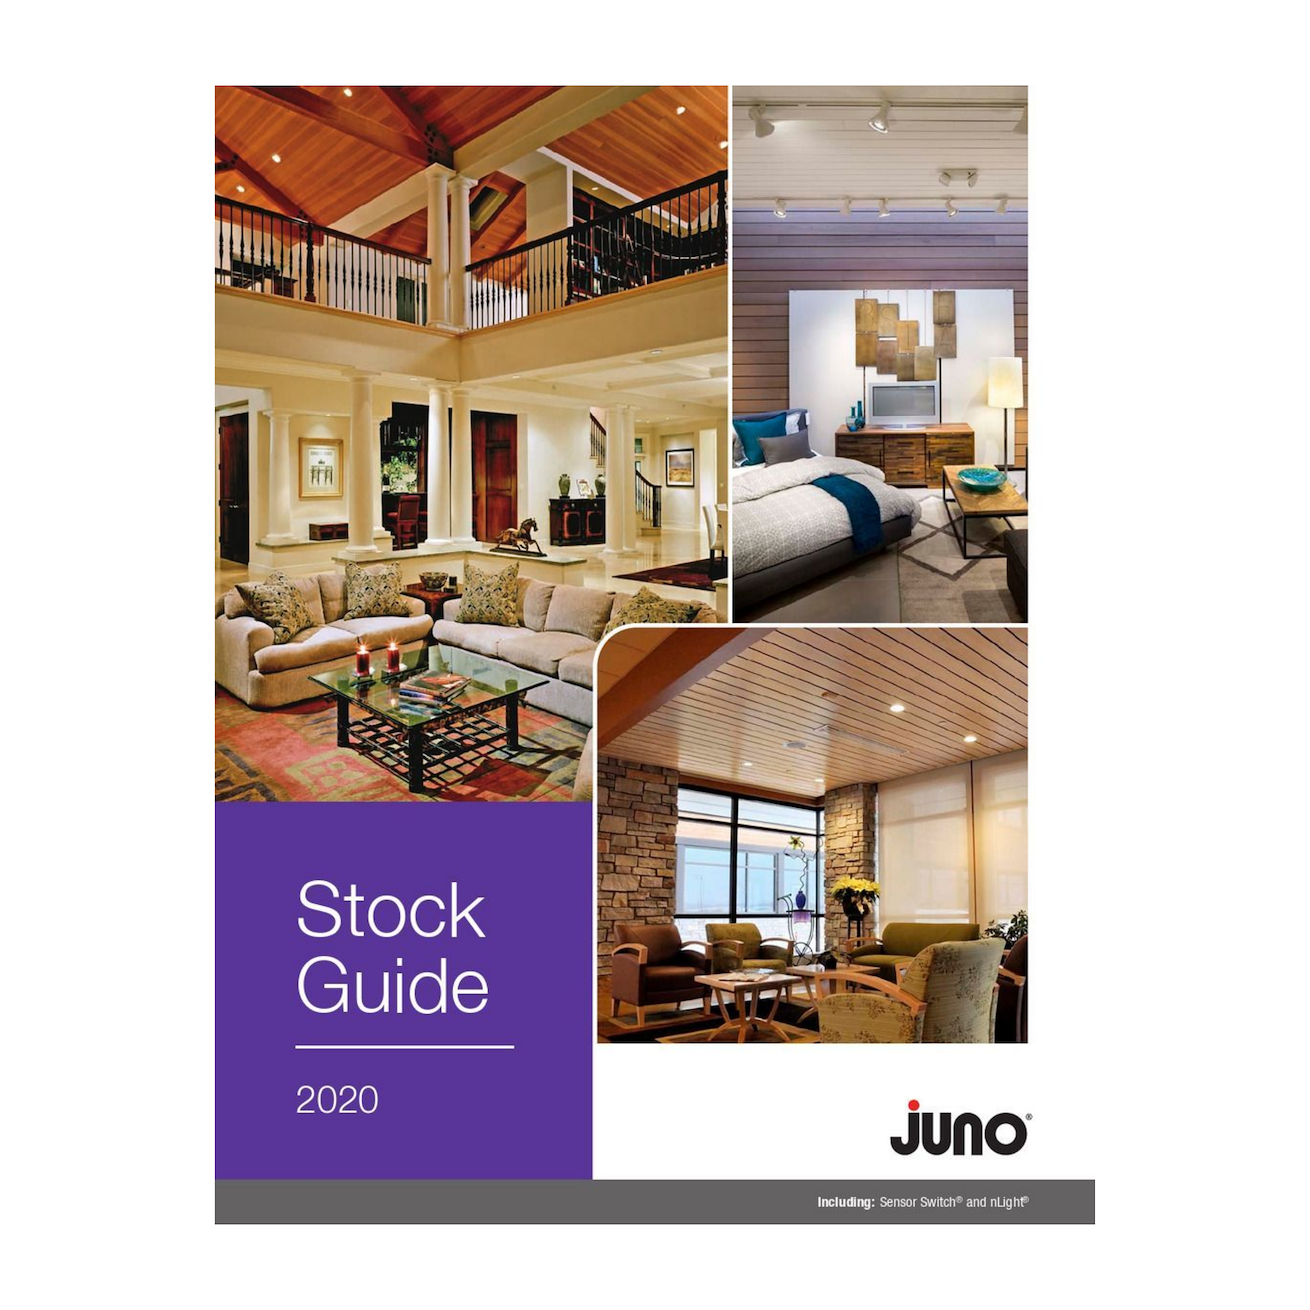 Stock Guide_juno